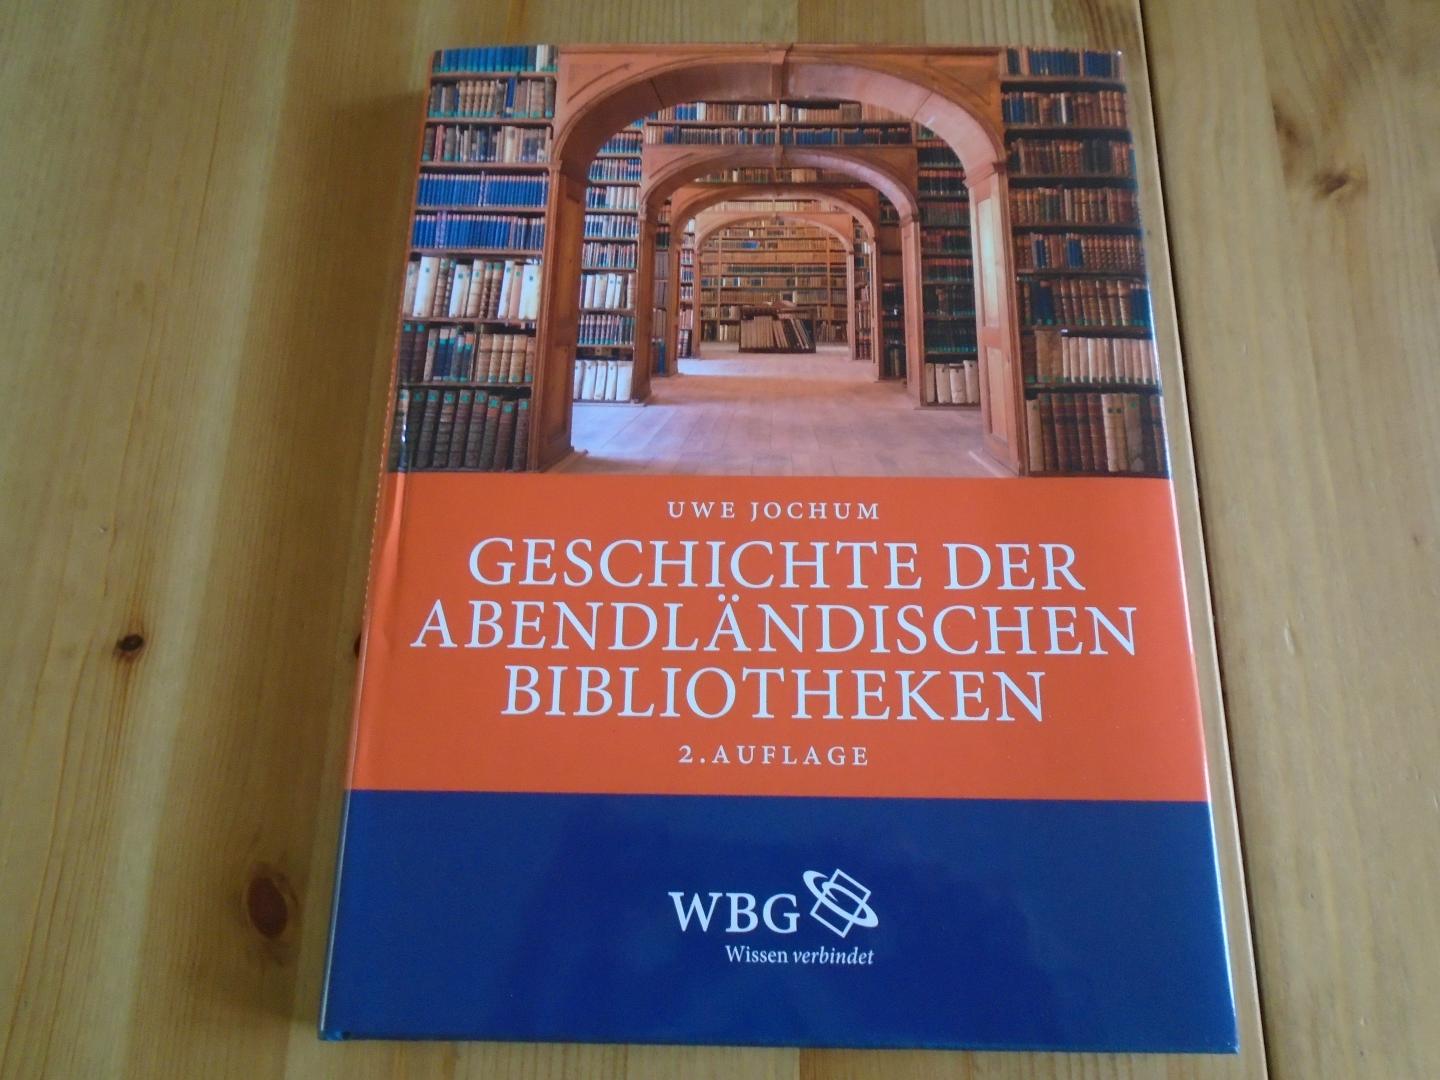 Jochum, Uwe - Geschichte der abendländischen Bibliotheken